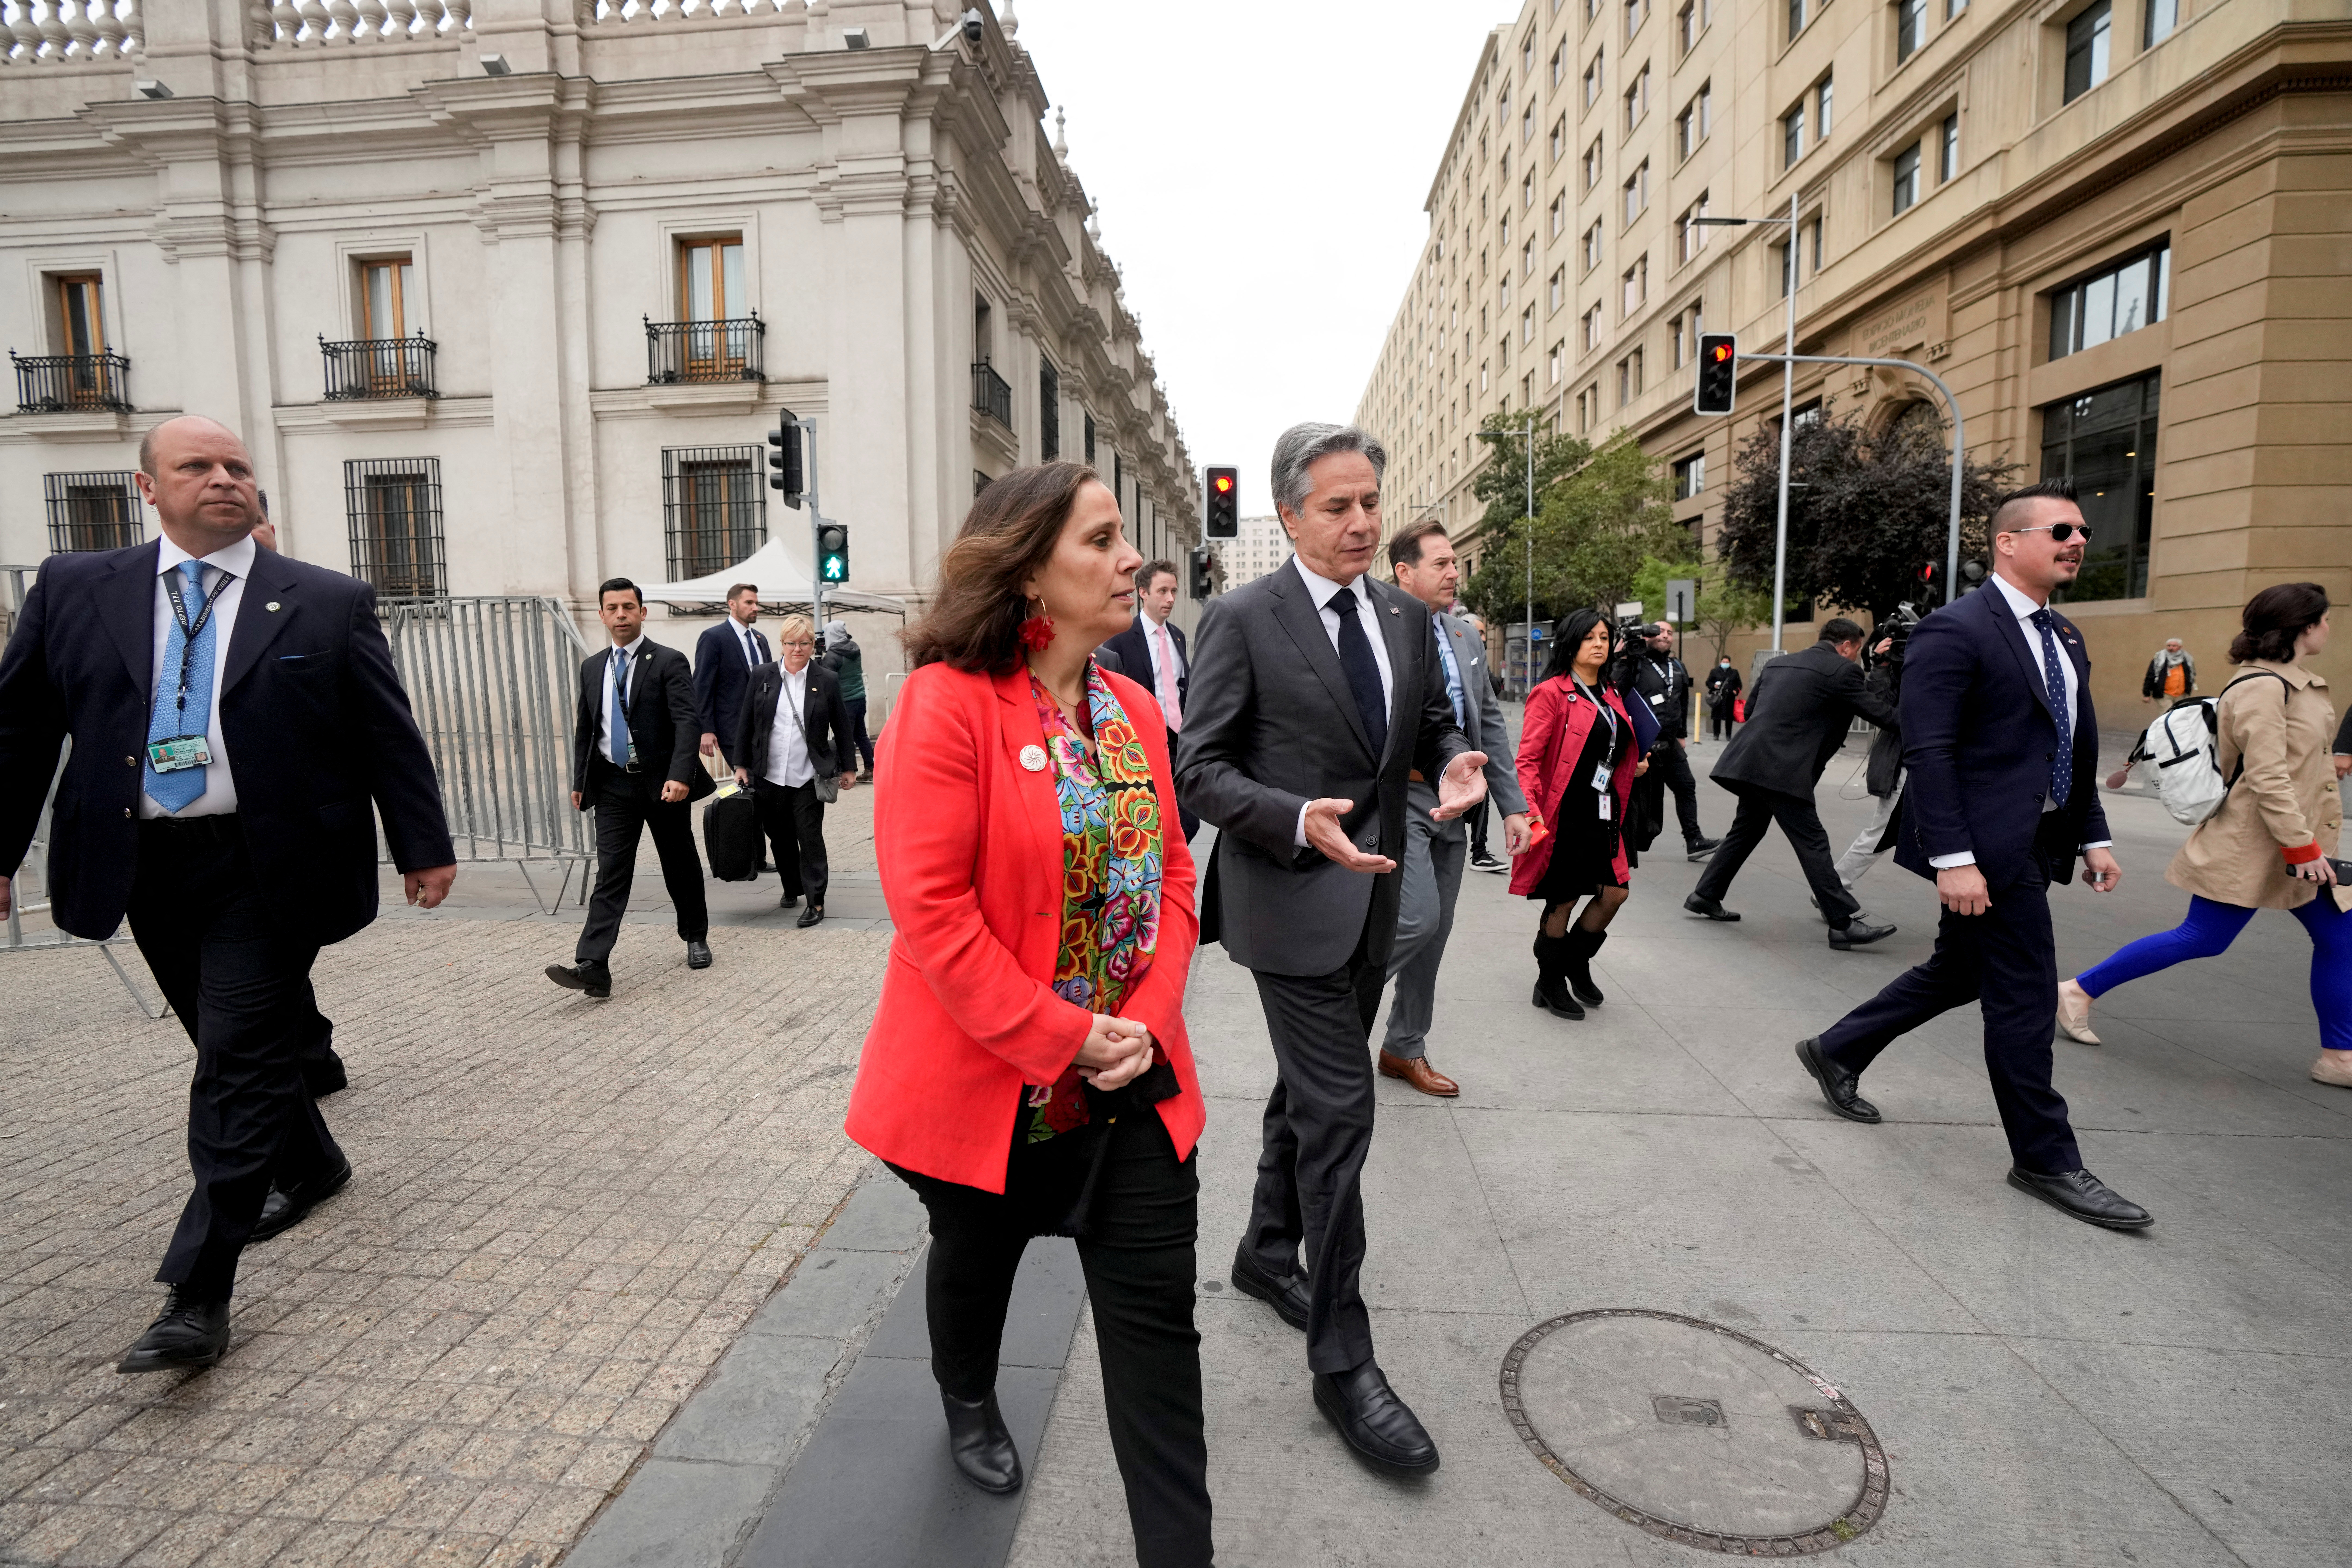 La ministra de Asuntos Exteriores de Chile, Antonia Urrejola, camina con el secretario de Estado norteamericano, Antony Blinken, frente al Palacio de La Moneda en Santiago (Esteban Felix/Pool via REUTERS)